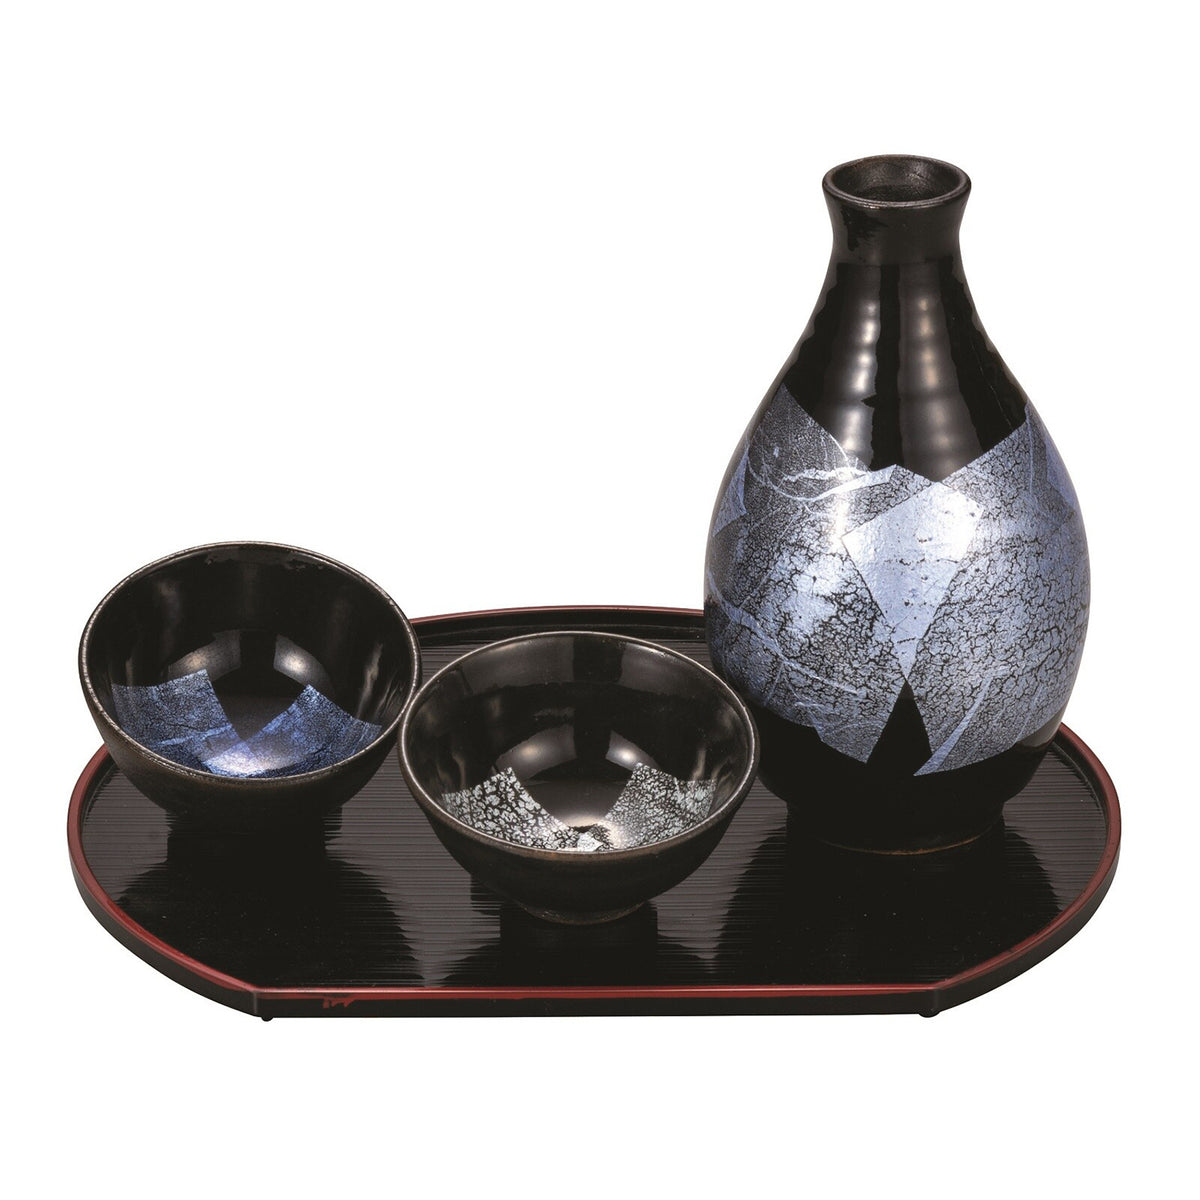 Kutani Ware Porcelain Sakeware Set With Serving Plate  Gindami